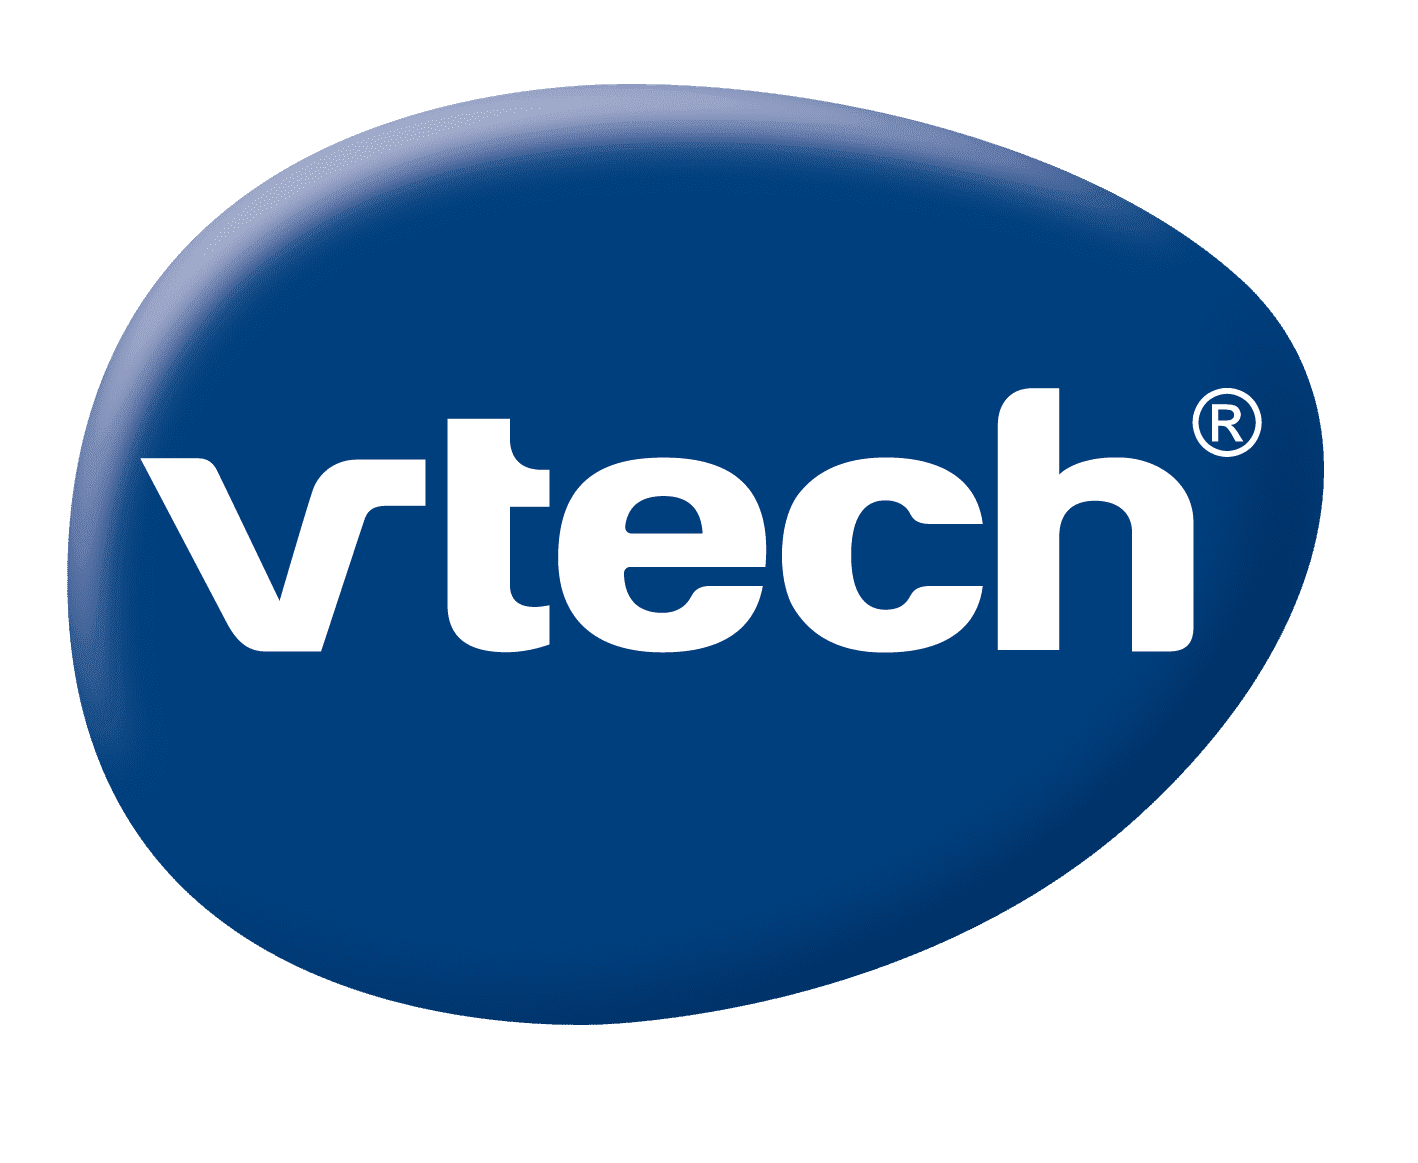 VTech logo